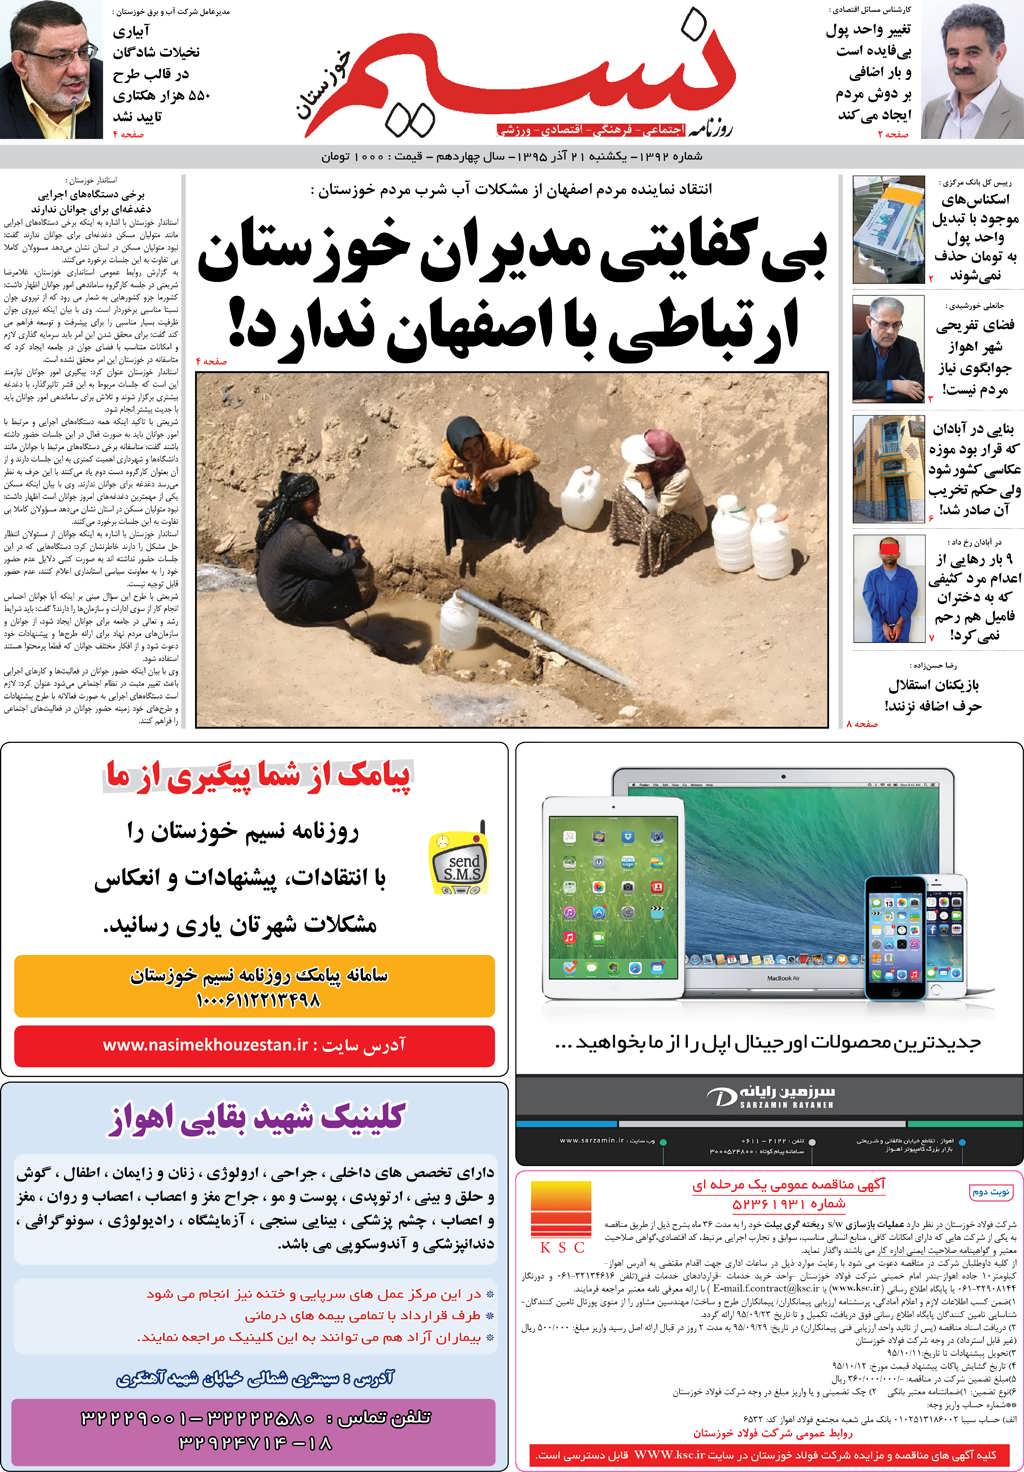 صفحه اصلی روزنامه نسیم شماره 1392